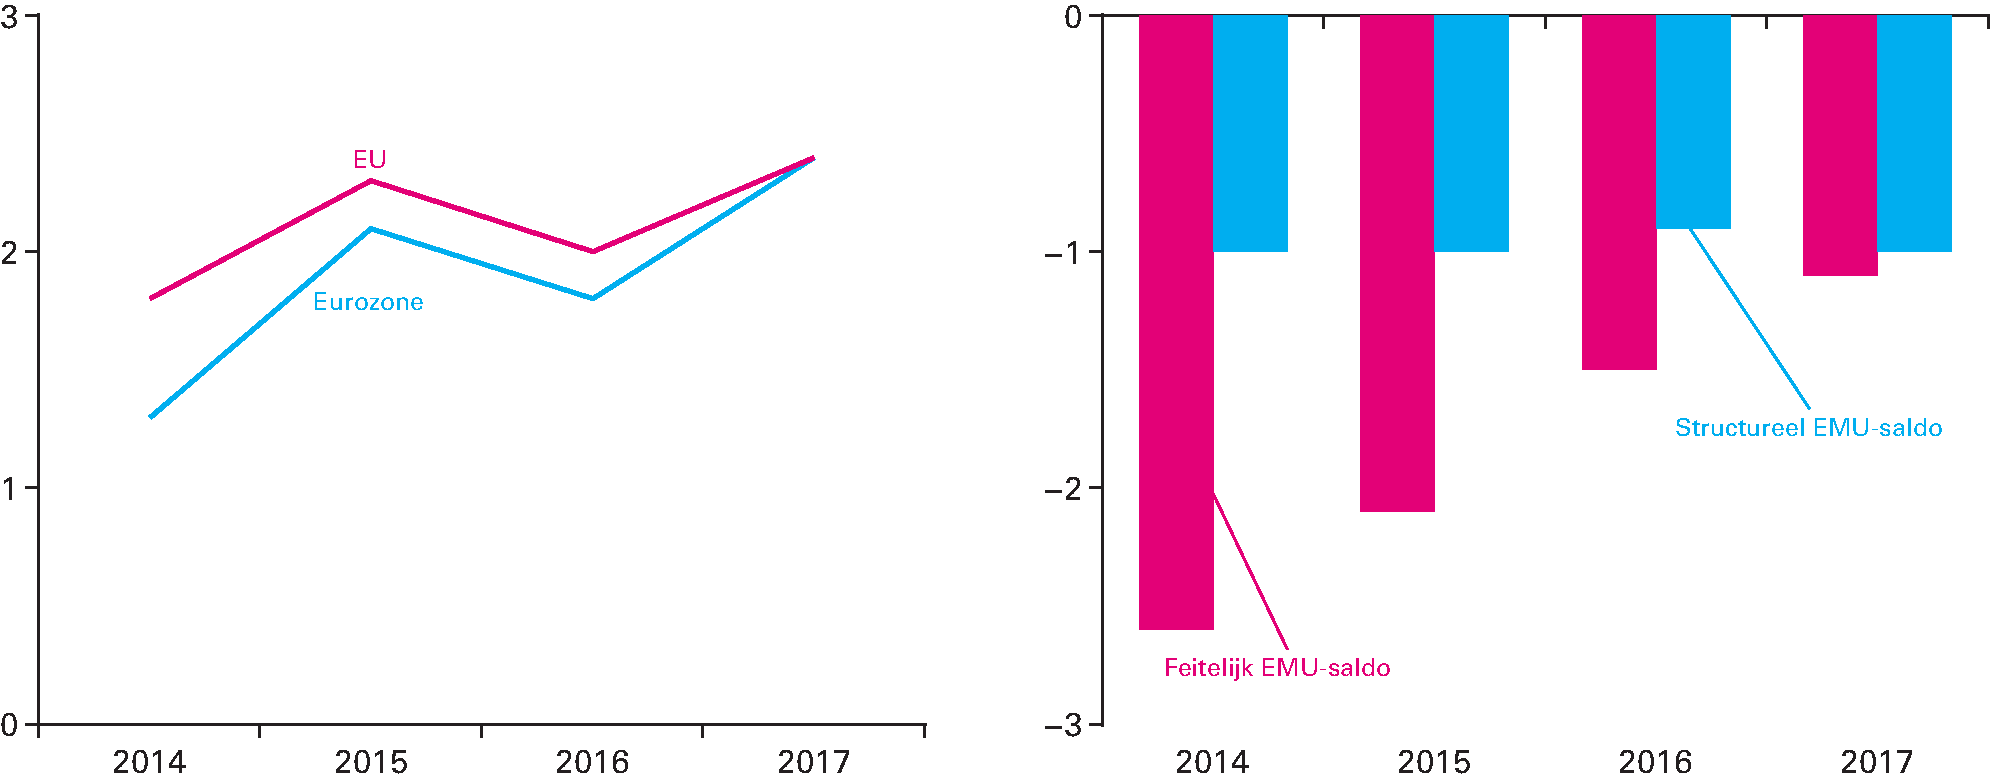 Figuur 1.3.1 Links: groei in procenten bbp (EU en Eurozone), rechts: ontwikkeling EMU-saldo in procenten bbp (feitelijk en structureel)